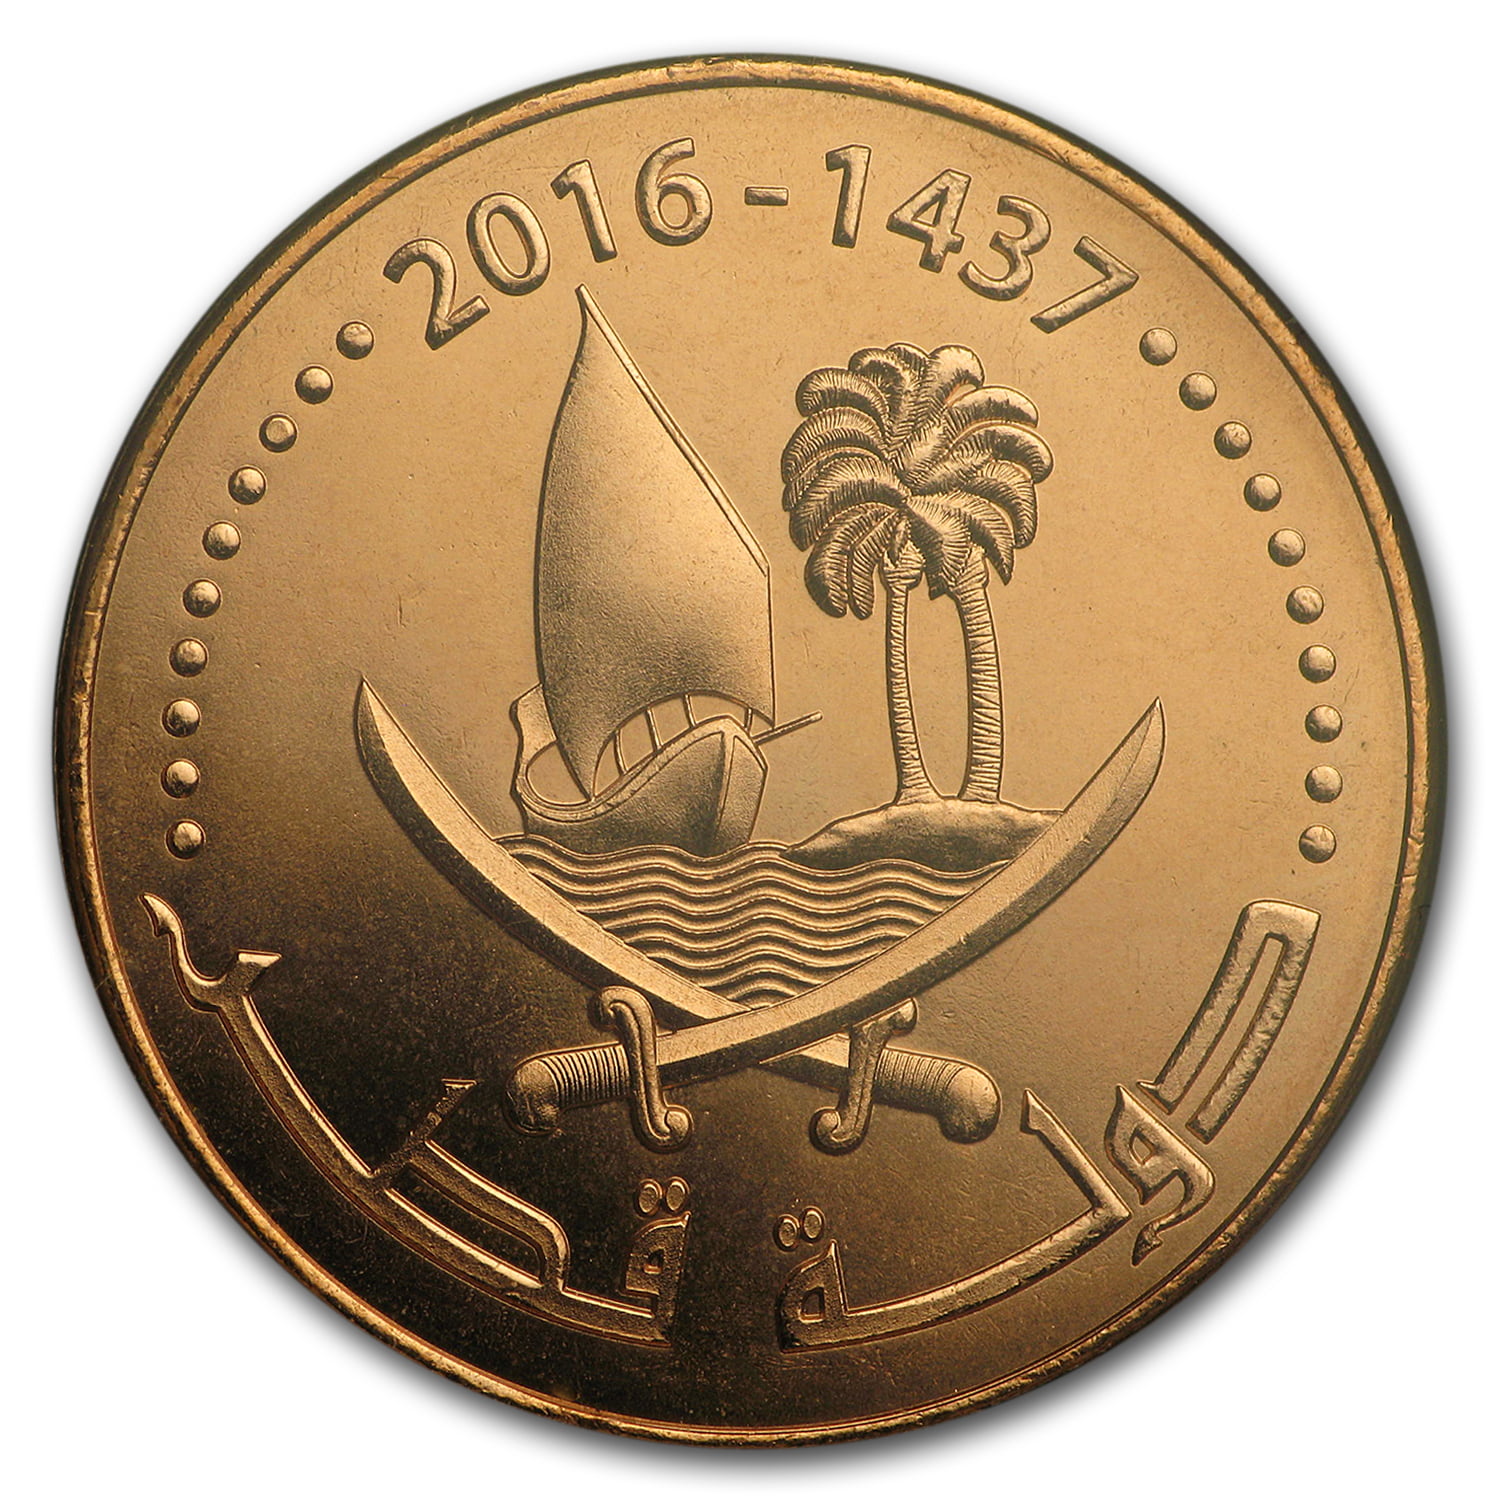 Qatar Coins. 13000 дирхам